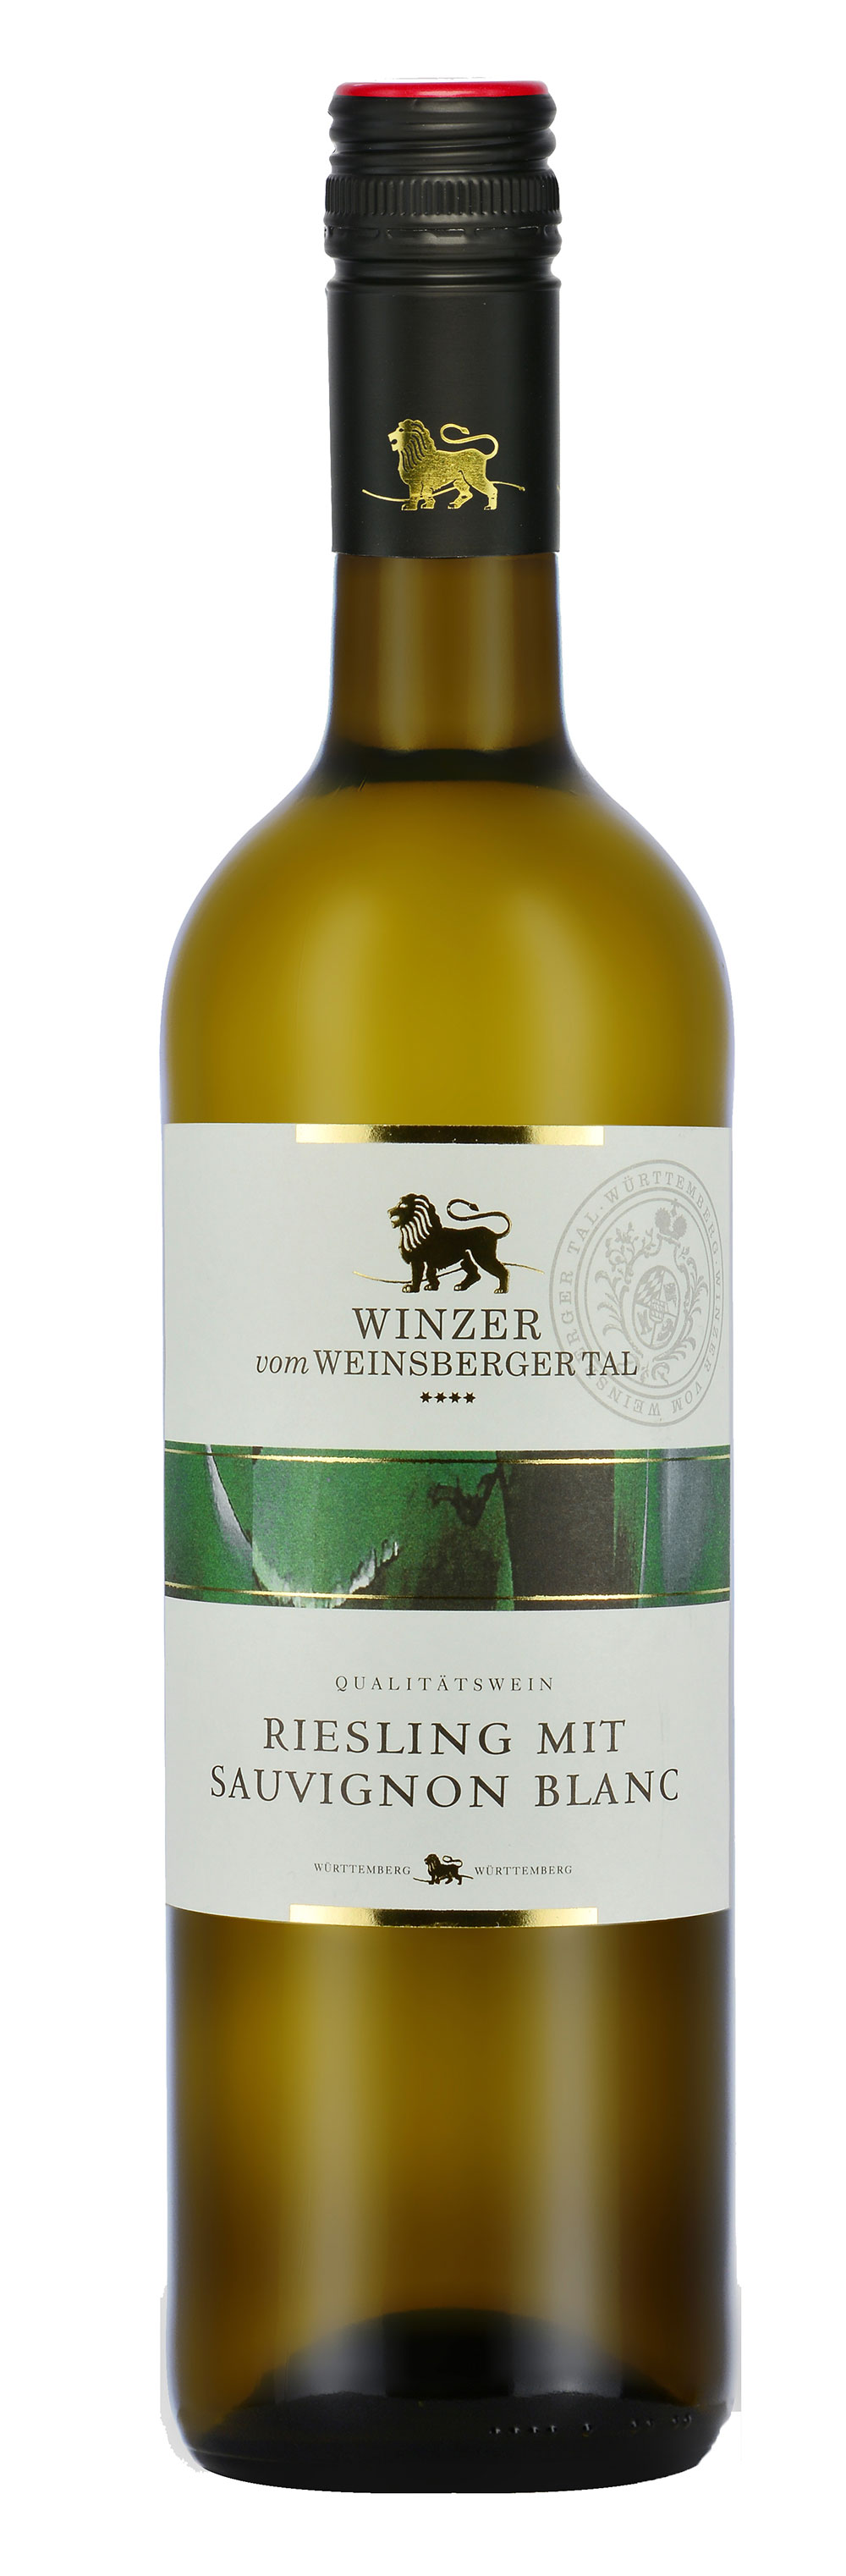 Winzer vom Weinsberger Tal Riesling mit Sauvignon Blanc QbA 2019